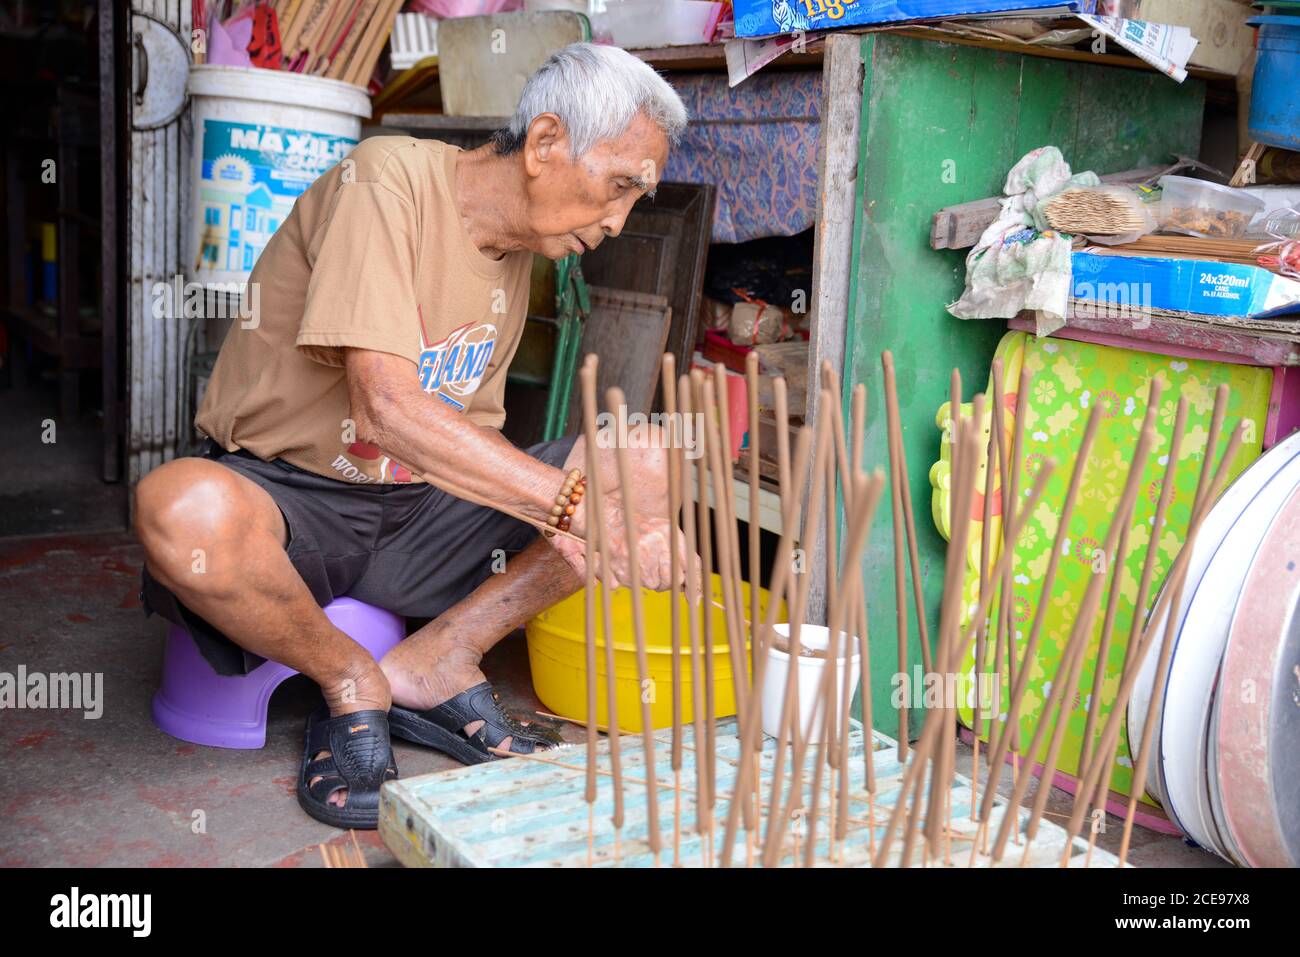 Georgetown, Penang/Malaysia - Okt 23 2016: Der letzte Handwerker des handgefertigten Joss-Stick-Herstellers in Penang stellt weiterhin uralten chinesischen Weihrauch her. Stockfoto